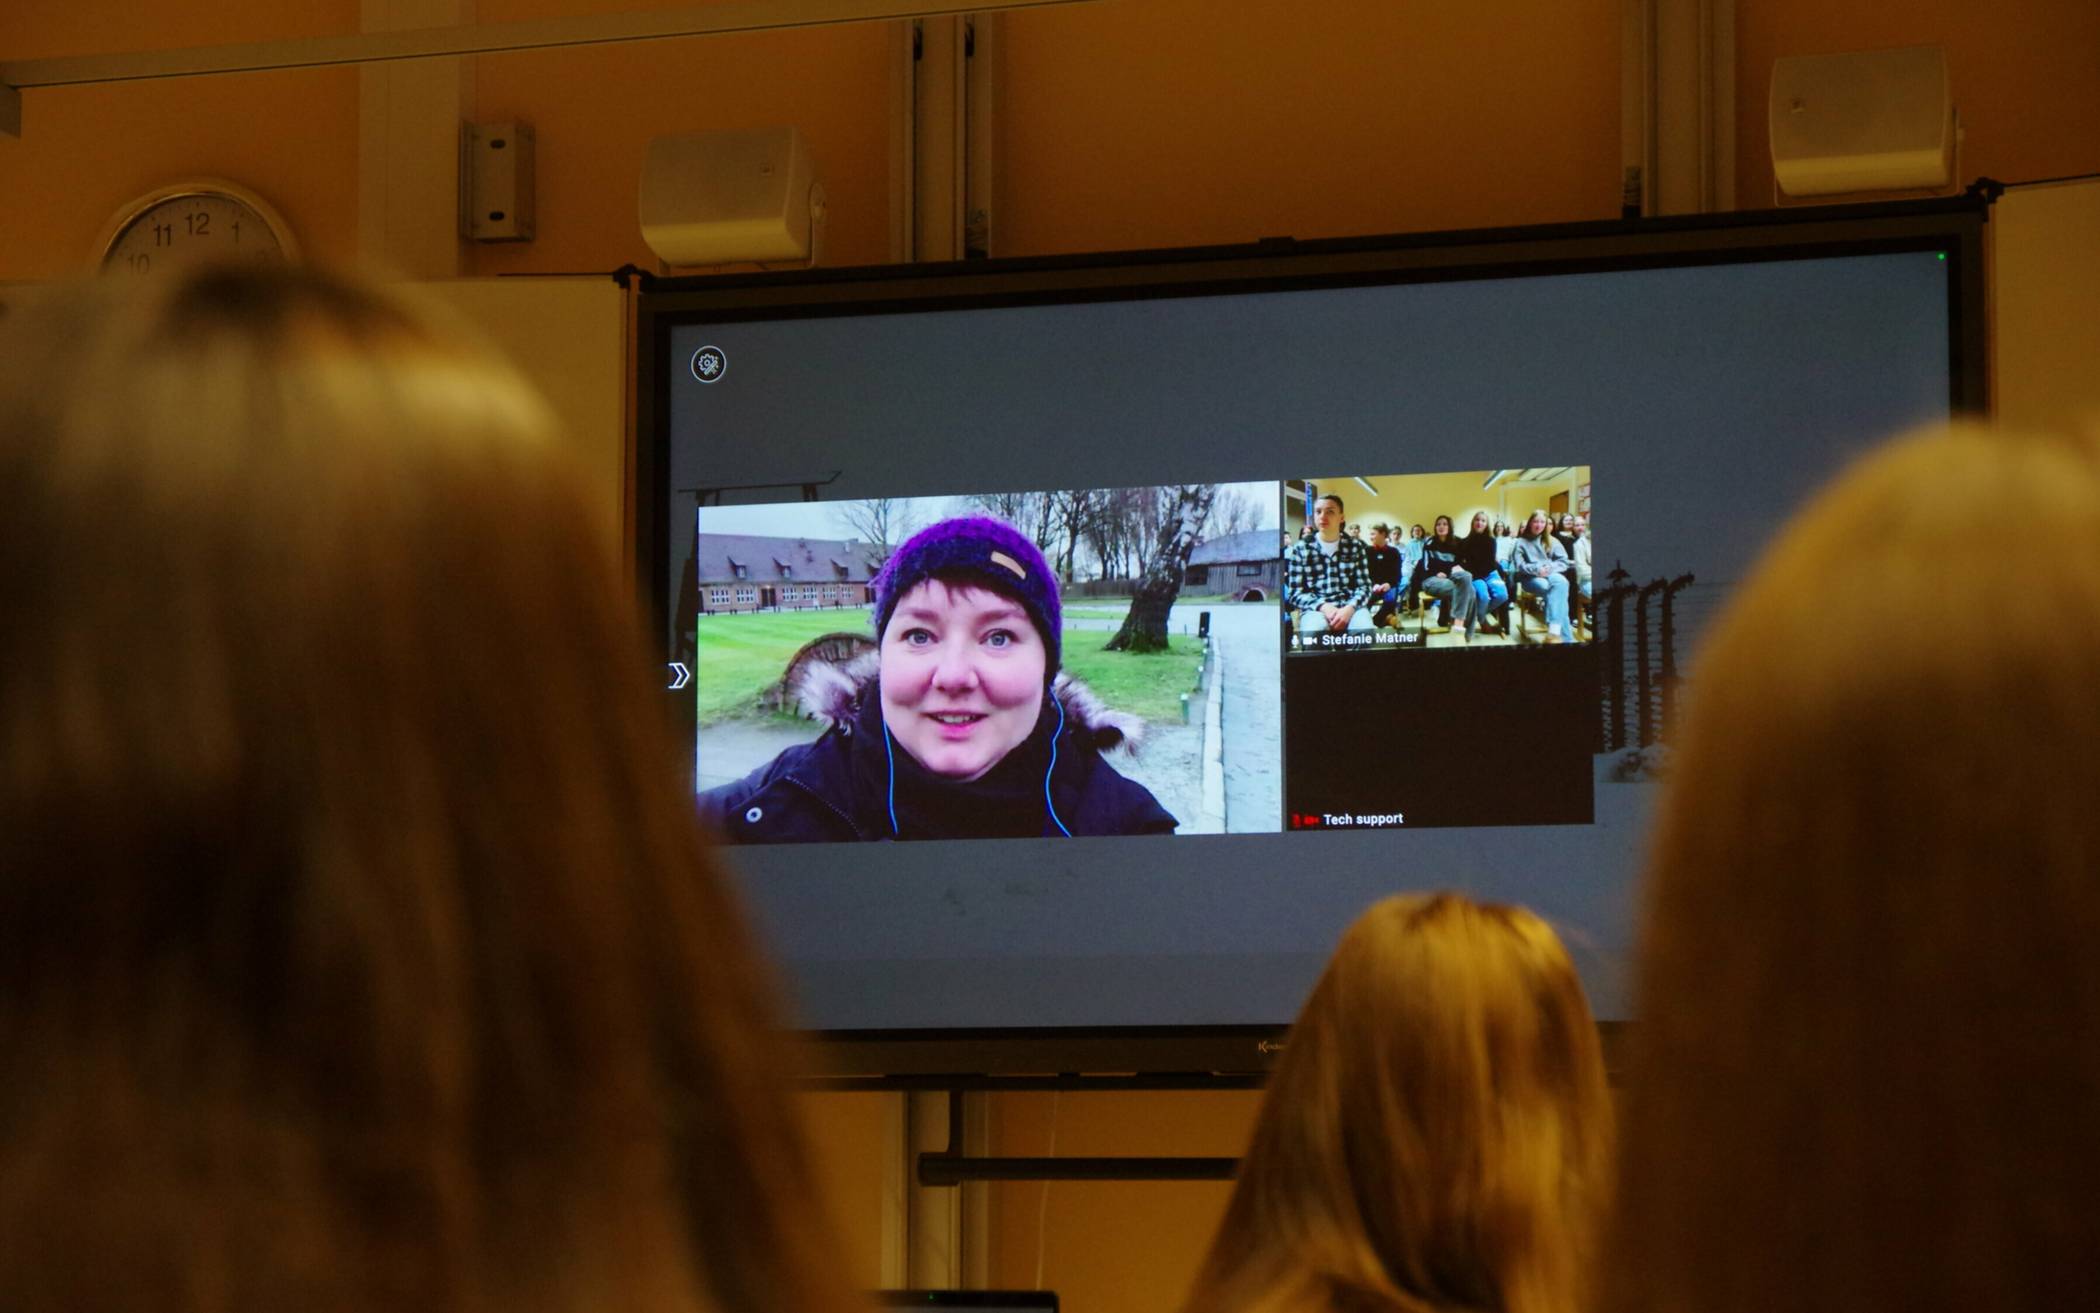  Schüler des Gymnasiums Jüchen erlebten eine digitale Live-Führung durch die Gedenkstätte Auschwitz-Birkenau. 